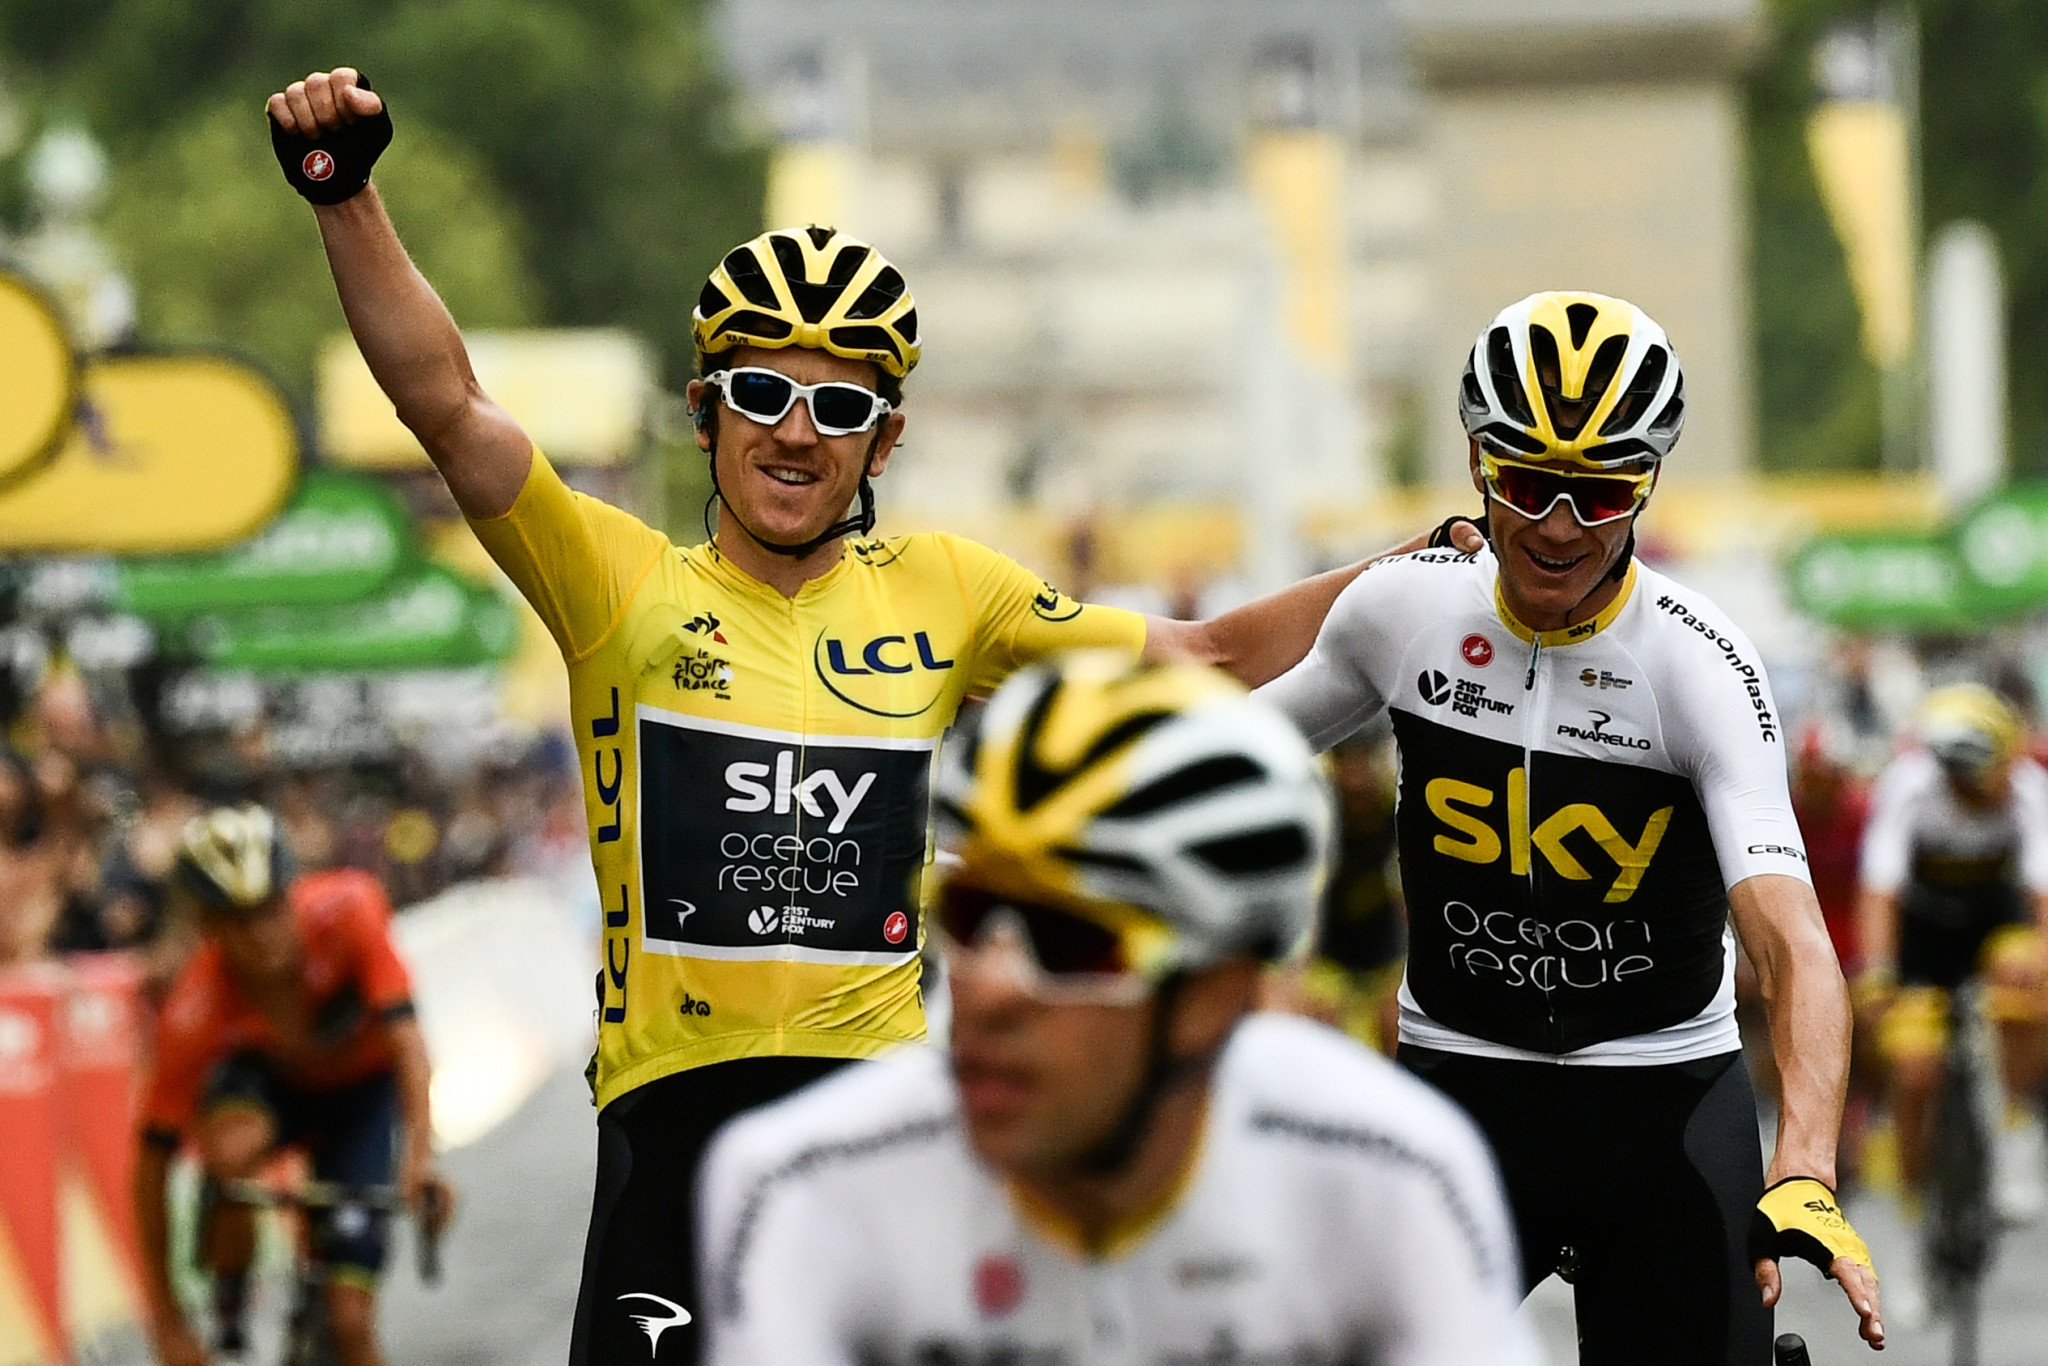 Thomas seals Tour de France triumph as Kristoff wins final stage in Paris